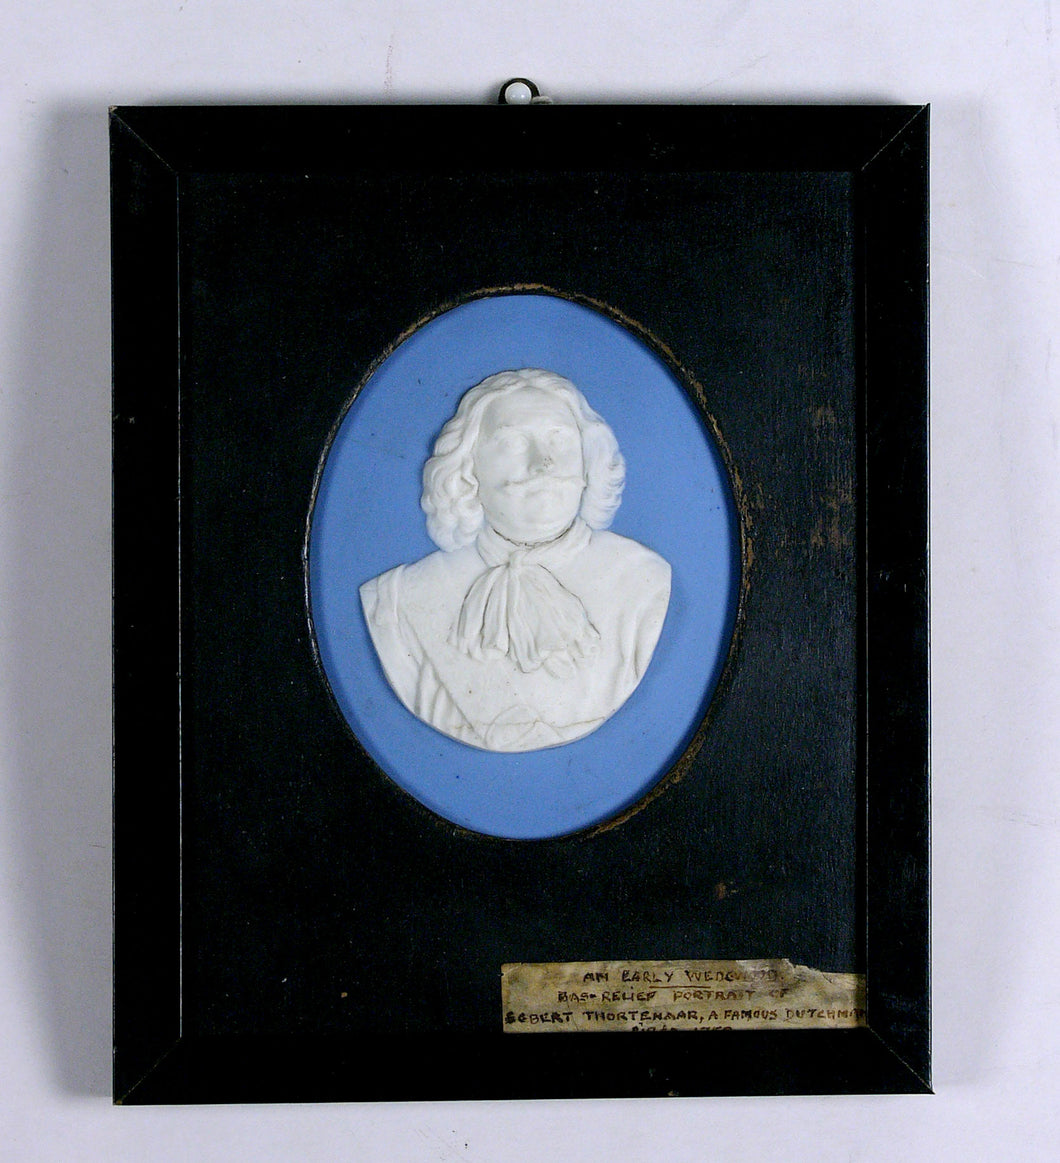 Portrait Medallion of Anglo-Dutch War Admiral Kortenaer, circa 1785